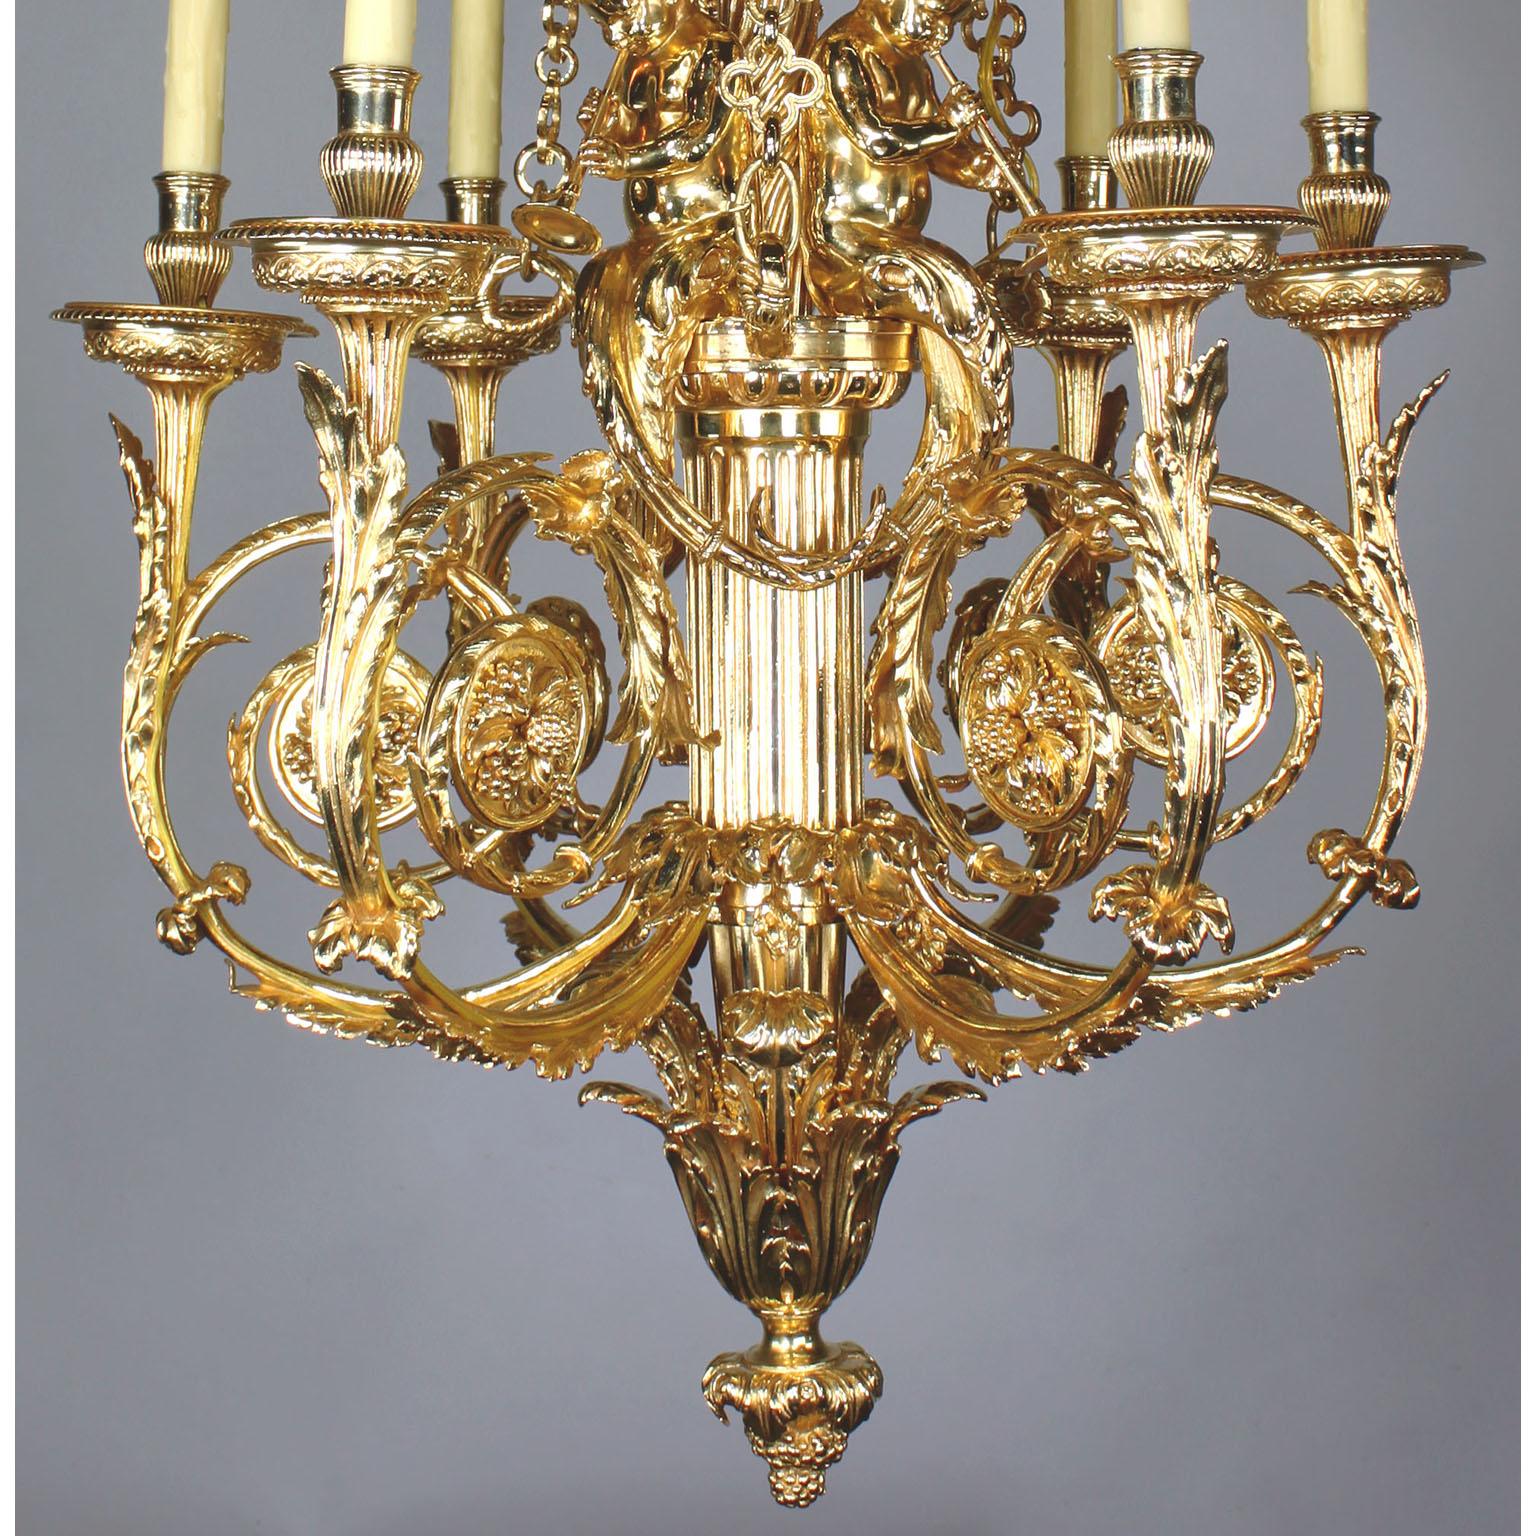 Lustre à sept lumières en bronze doré de style Louis XVI avec des figures de Putti (enfants), d'après le modèle de Pierre Gouthière dans le Cabinet doré pour Marie-Antoinette au château royal de Versailles. Le corps en bronze doré brillant, joliment